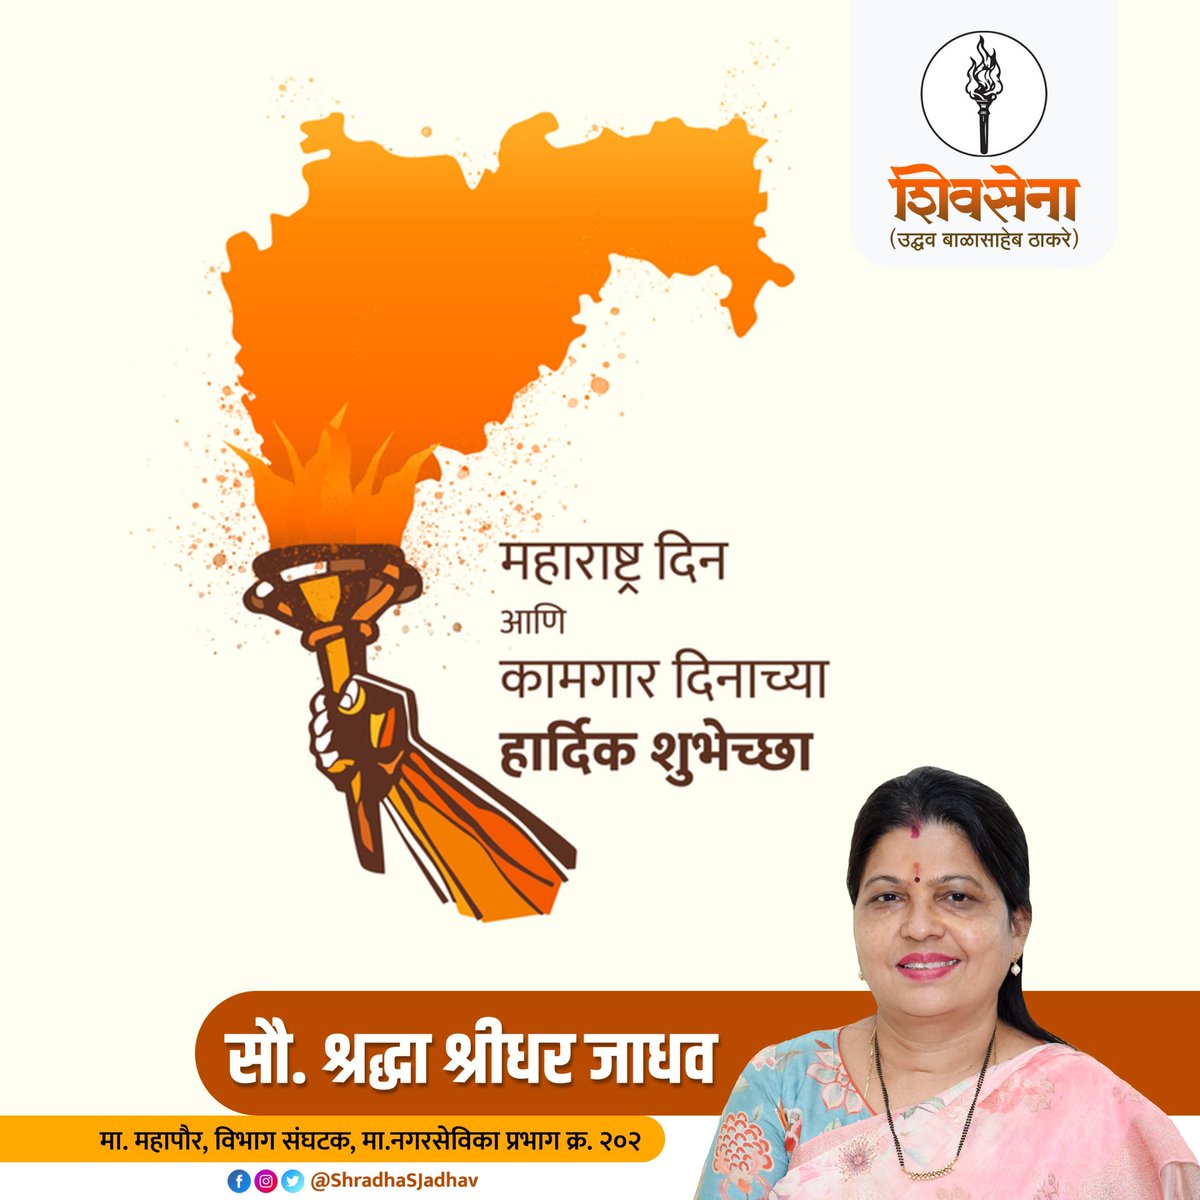 महान संतांची जन्मभूमी, विज्ञानाने जेथे केली प्रगती प्रेम, आदर, स्नेह आणि माणुसकी हीच आहे आमची संस्कृती. महाराष्ट्र दिनाच्या मनापासून शुभेच्छा..! #Maharashtra #InternationalWorkersDay